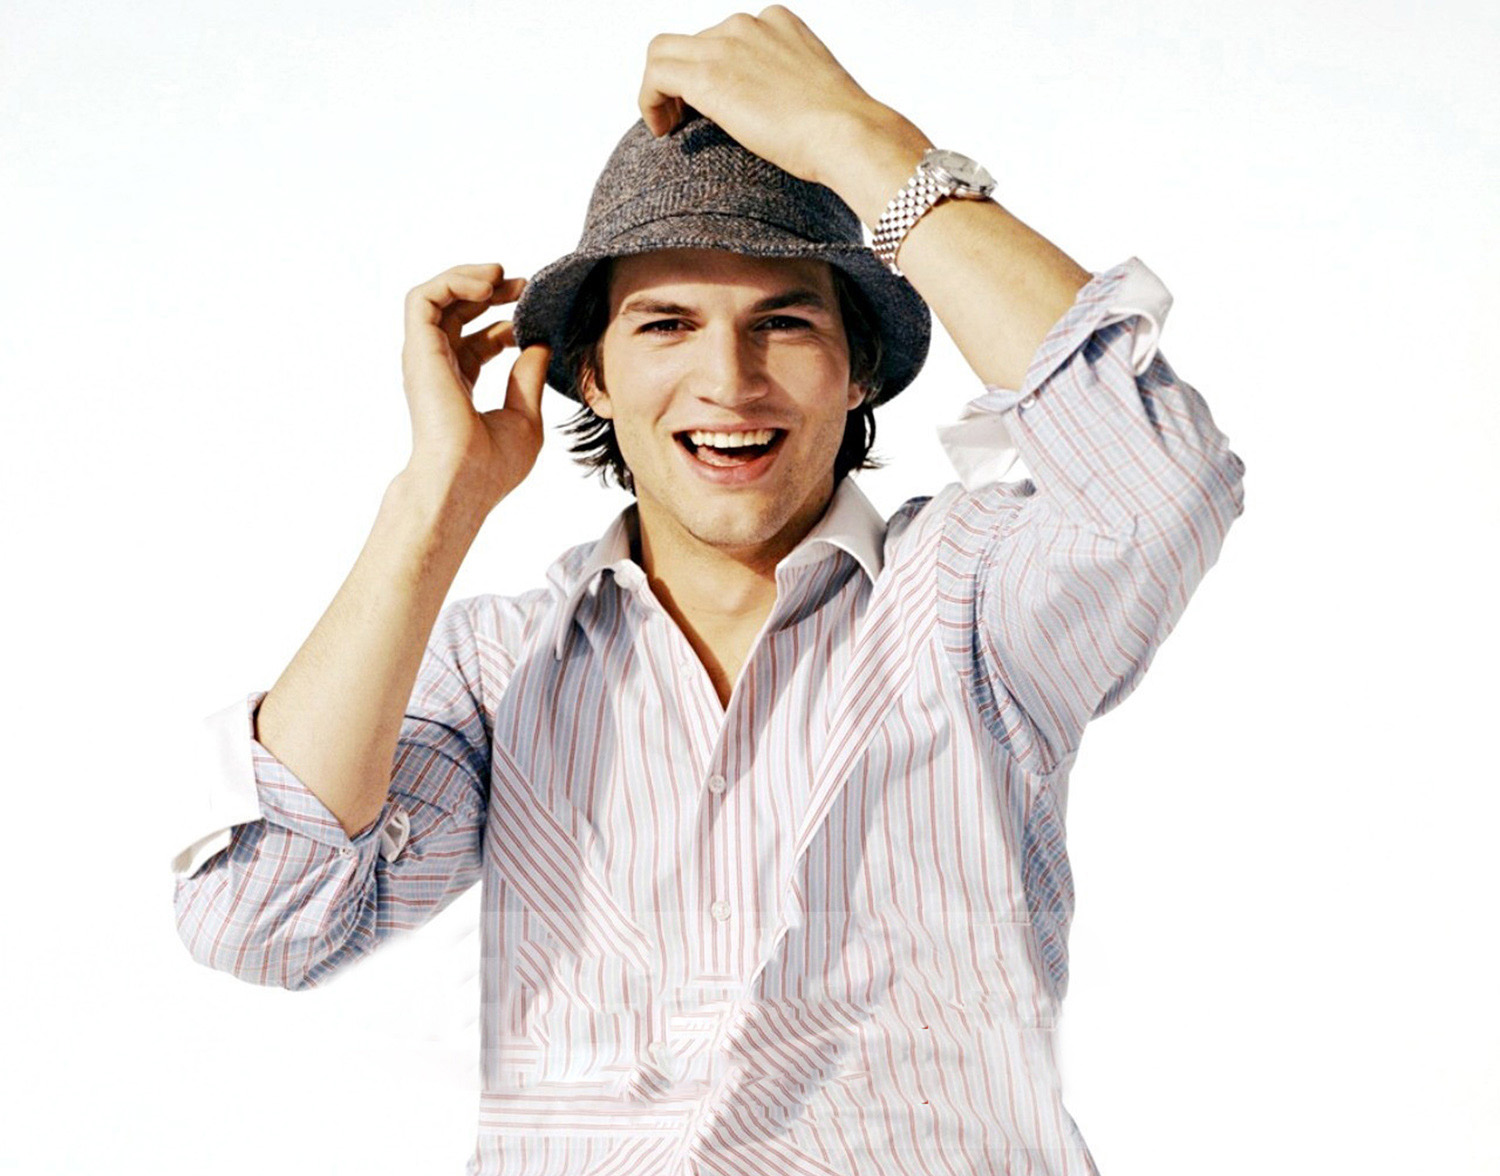 Ashton Kutcher In Hat wallpapers Wallpaper, HD Celebrities 4K Wallpapers, I...